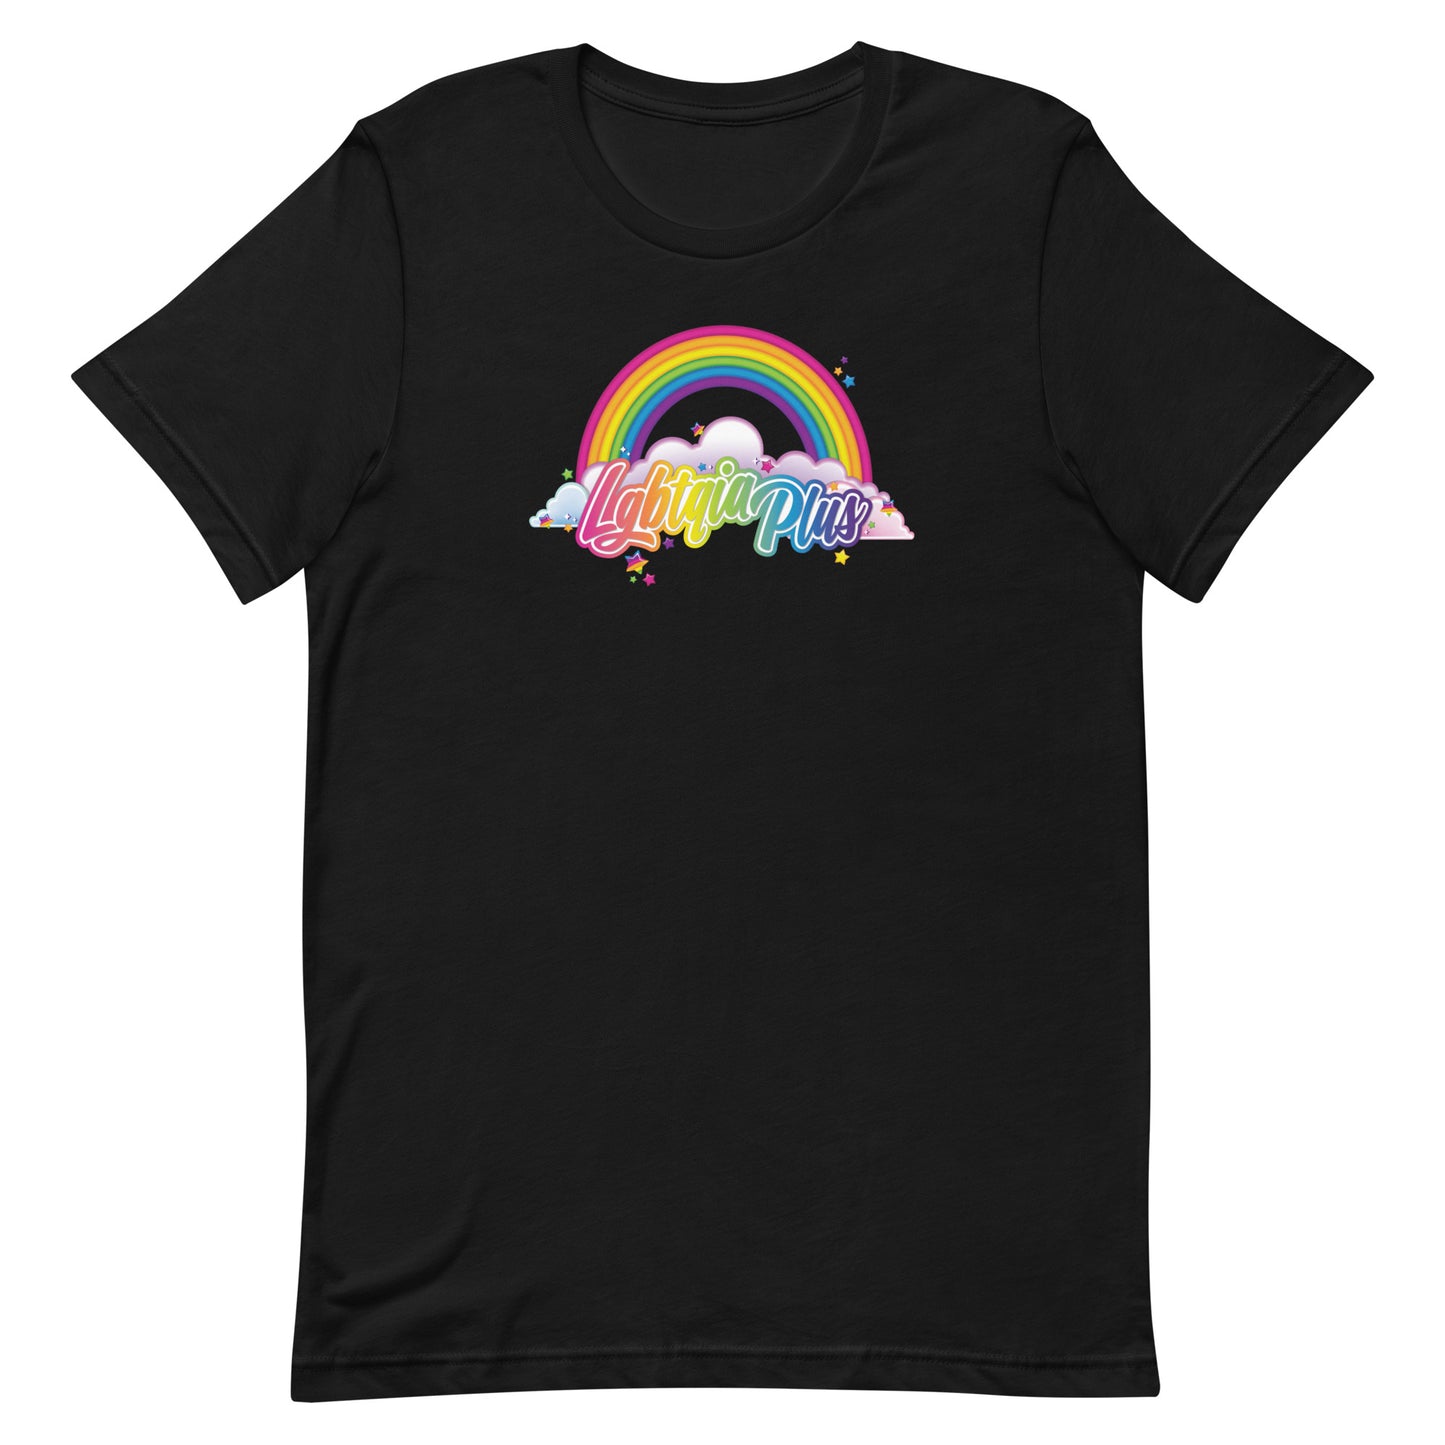 LGBTQIA Frank T-Shirt: LGBTQIA Plus